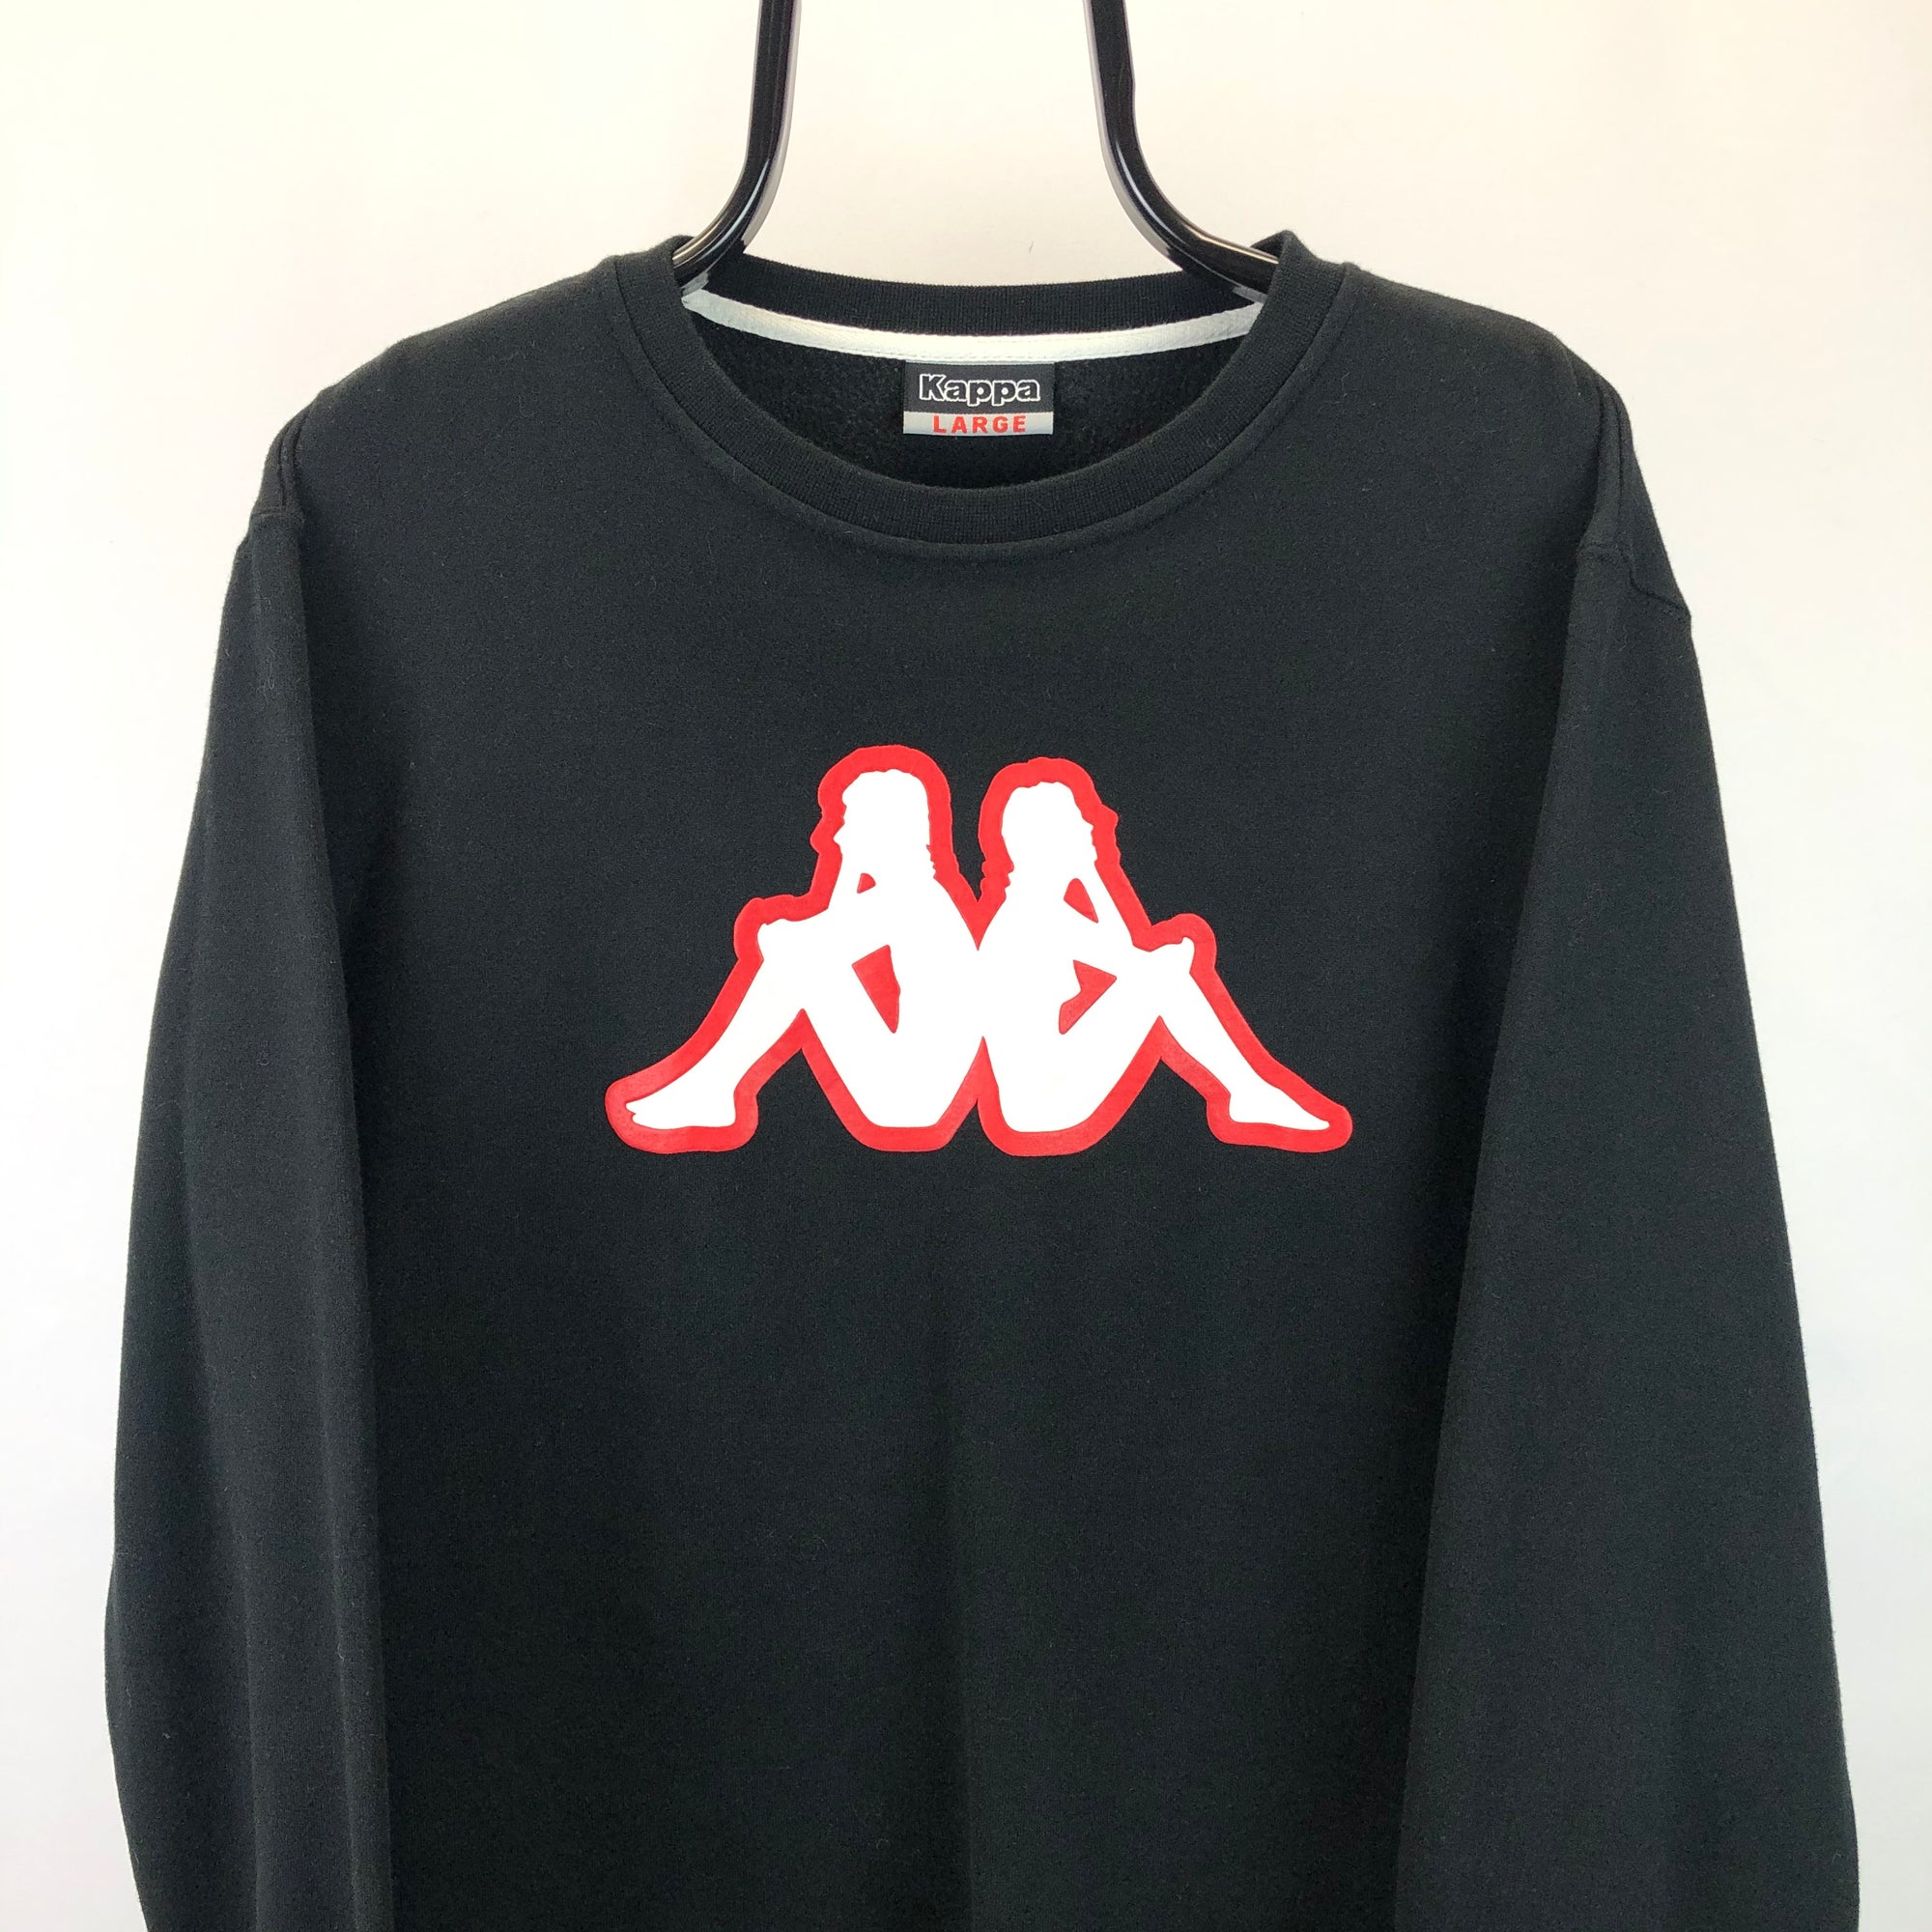 Kappa Big Logo Sweatshirt in Black/Red/White - Men's Large/Women's XL